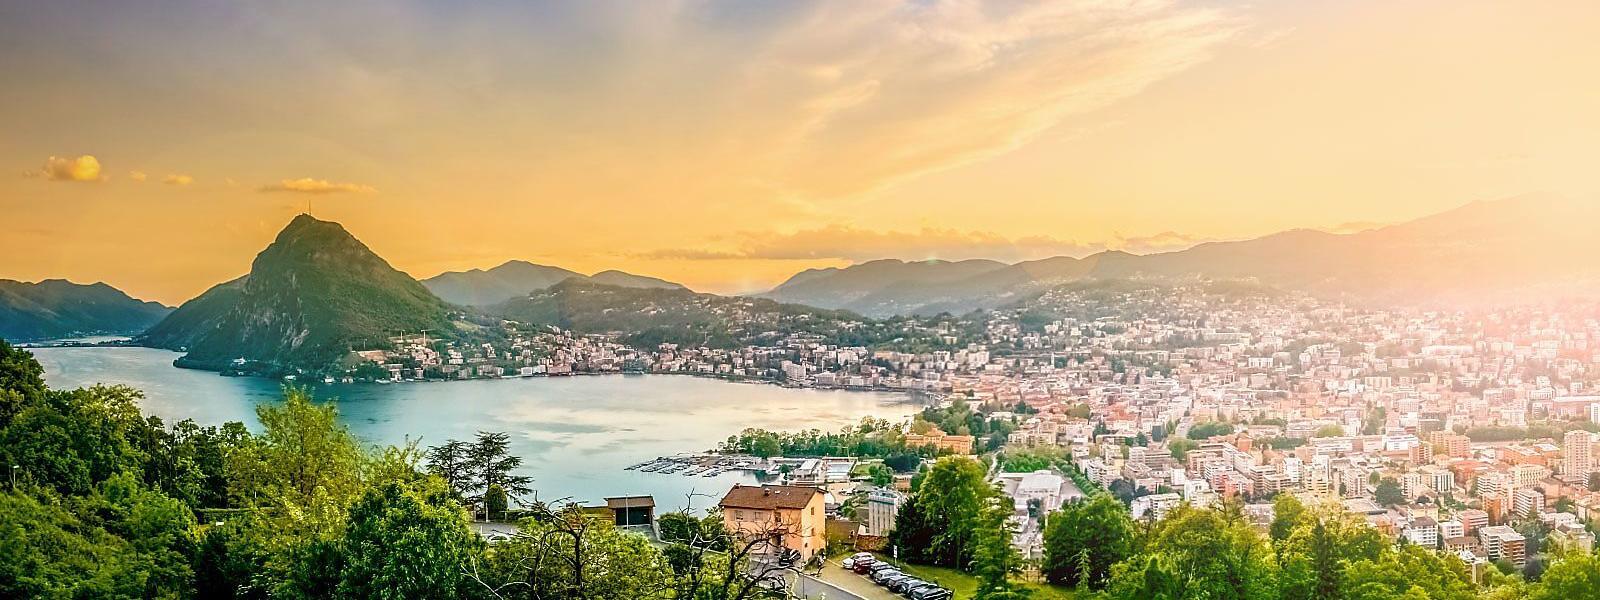 Mit Ferienhäusern und Fewos in Lugano gediegen Urlaub im Tessin machen - e-domizil